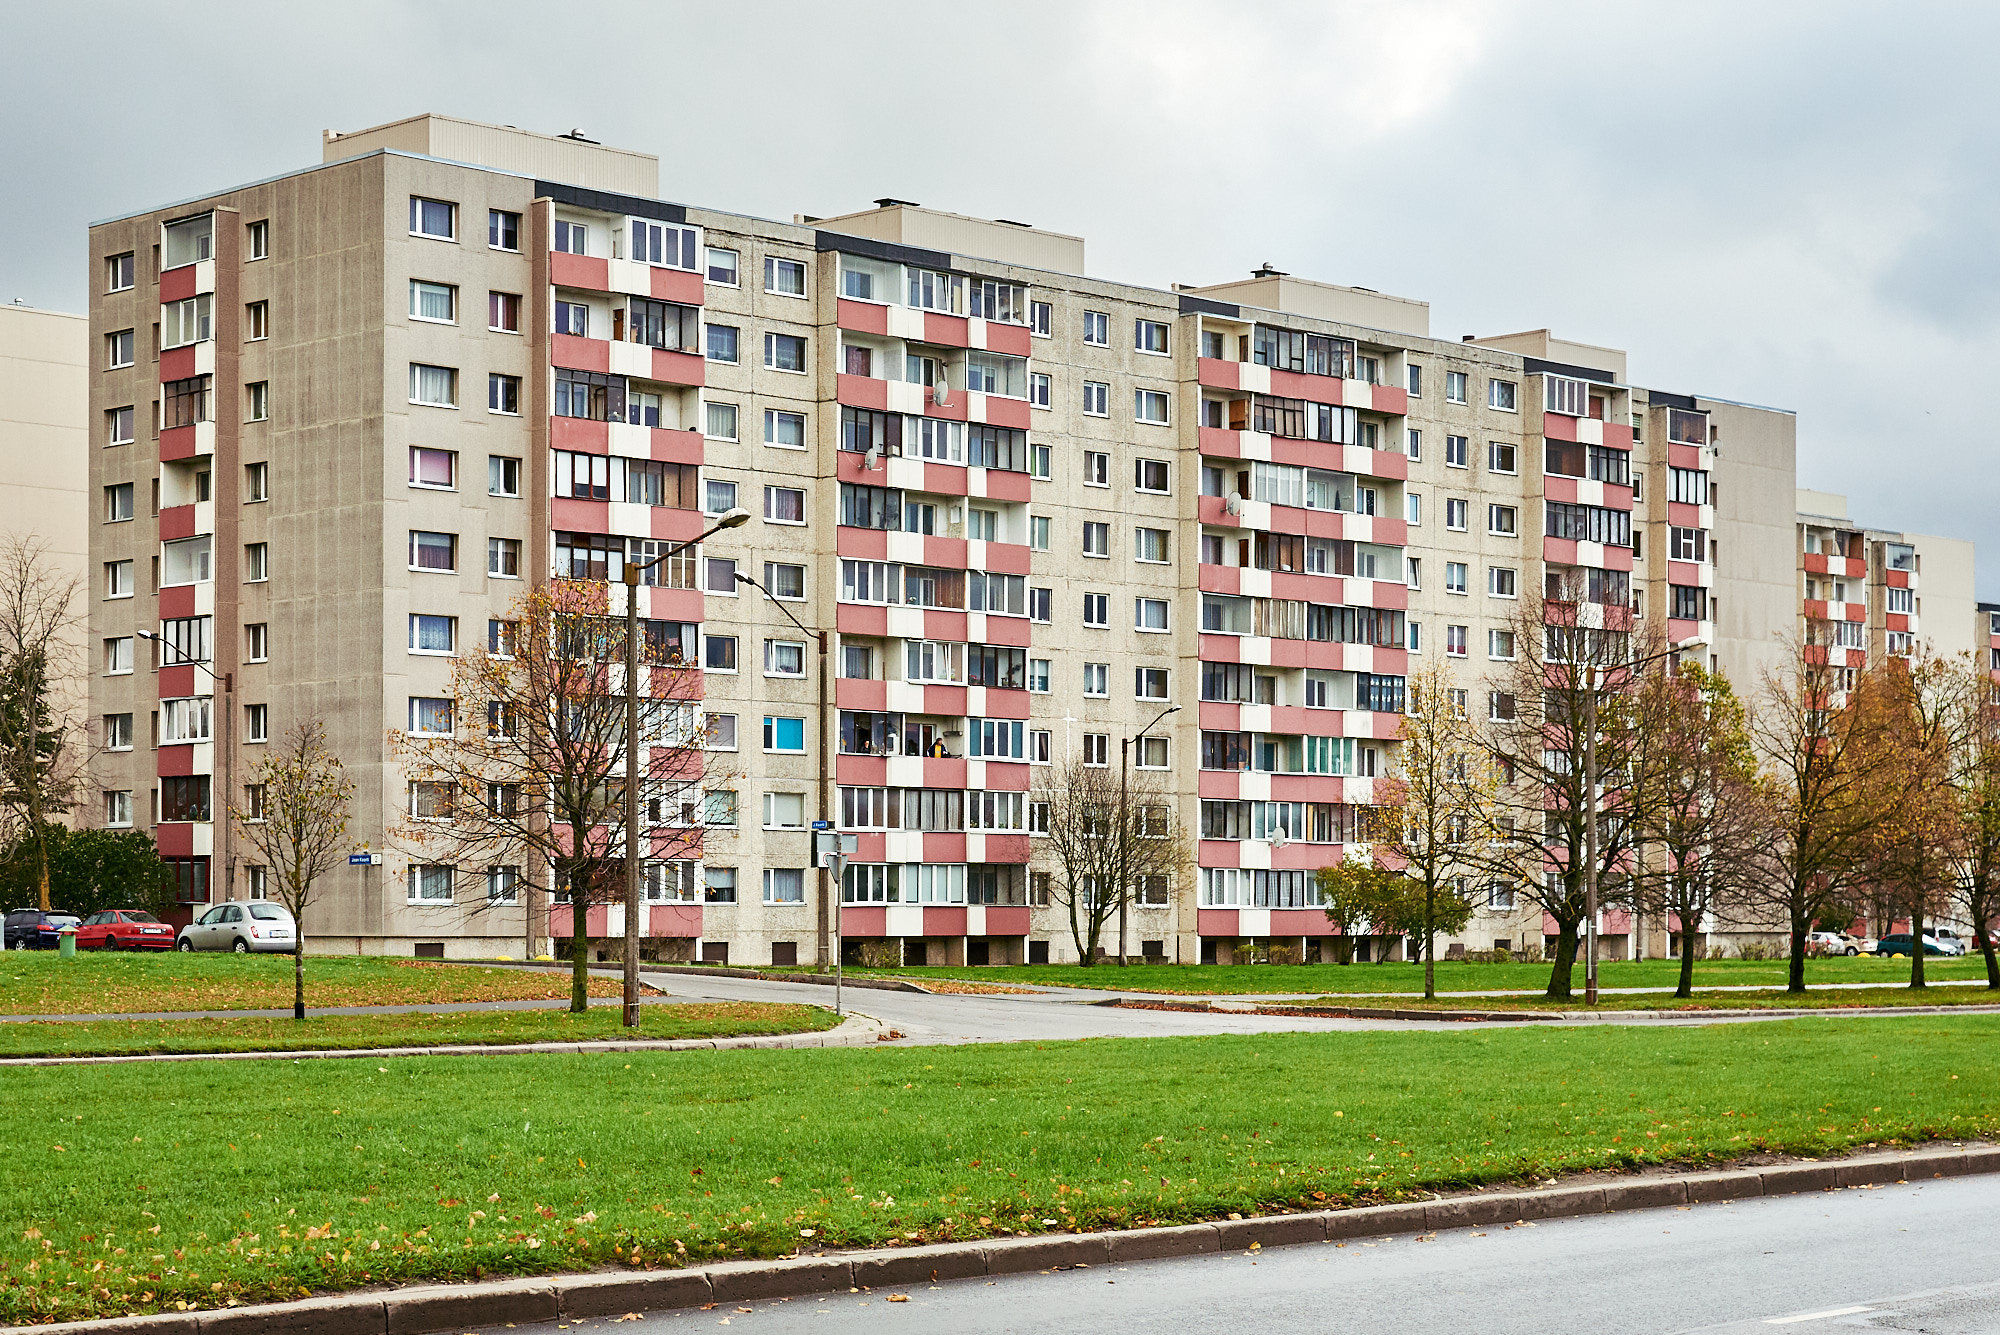 Самый большой жилой район Таллинна - Ласнамяэ